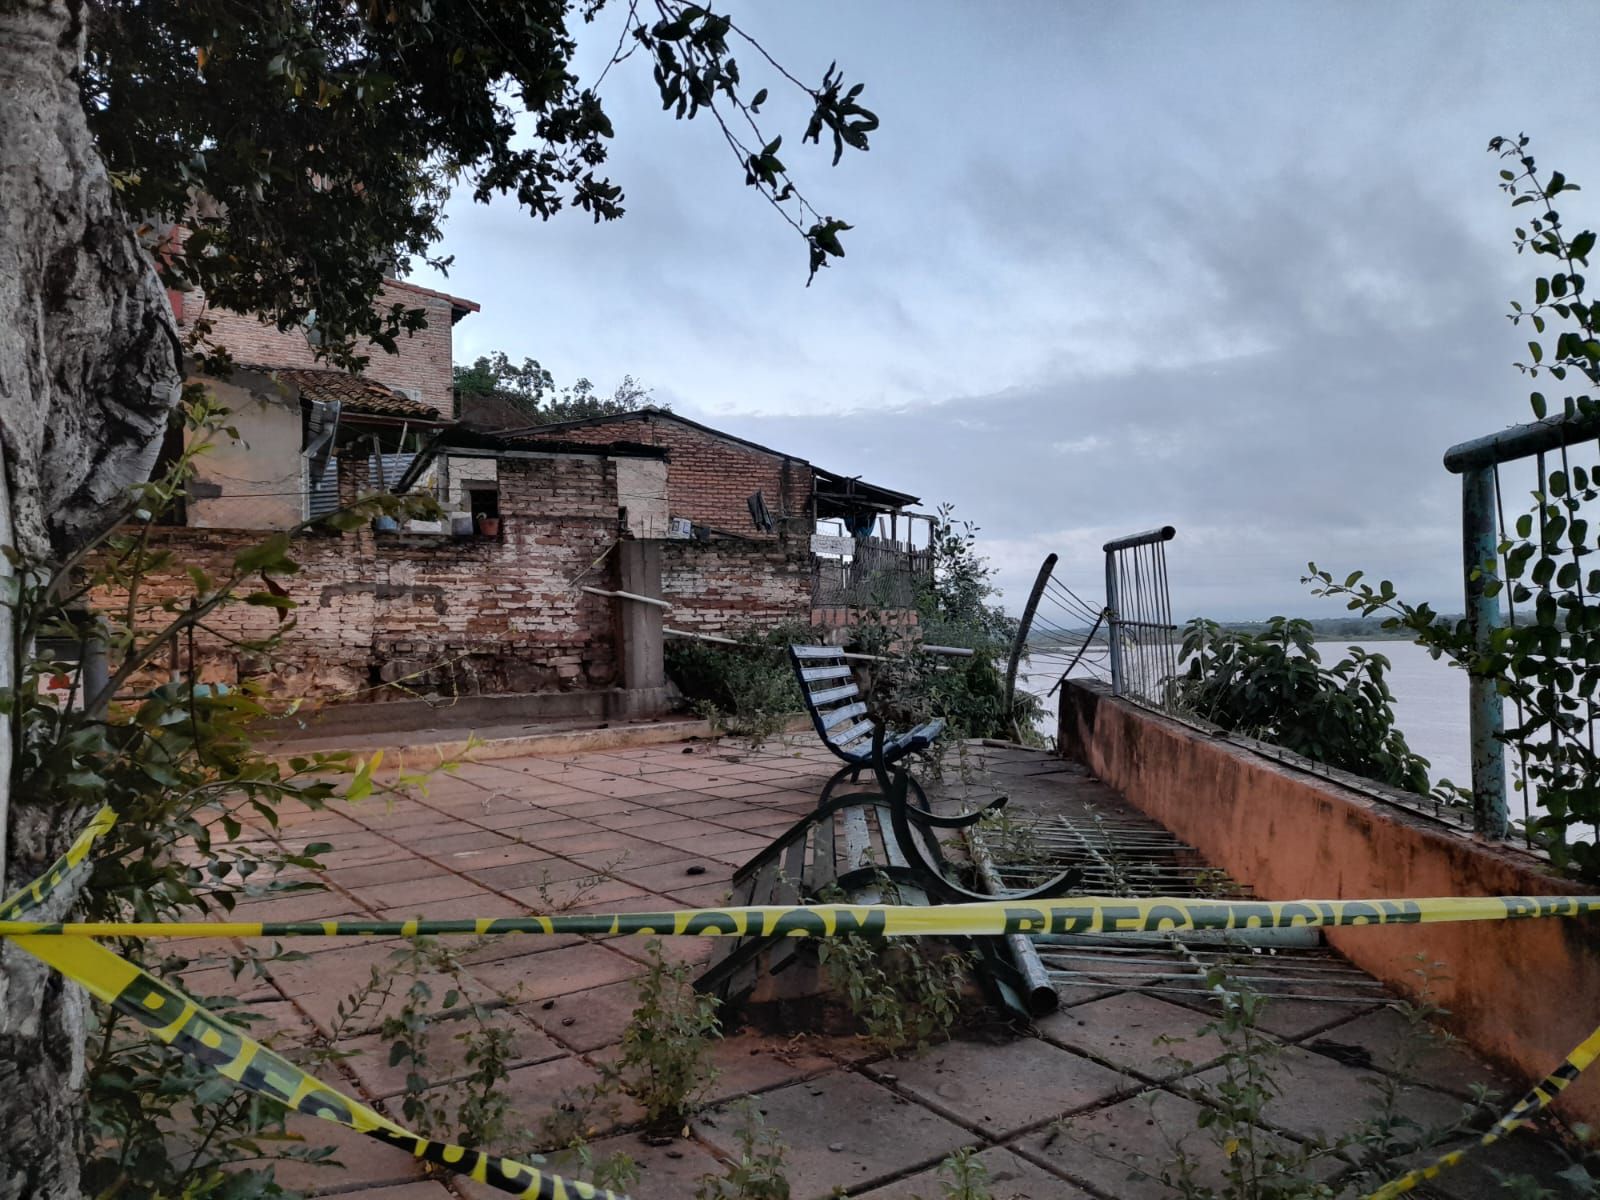 El mirador de Ita Pytã Punta sigue en estado de abandono tras la caída de una mujer en enero.